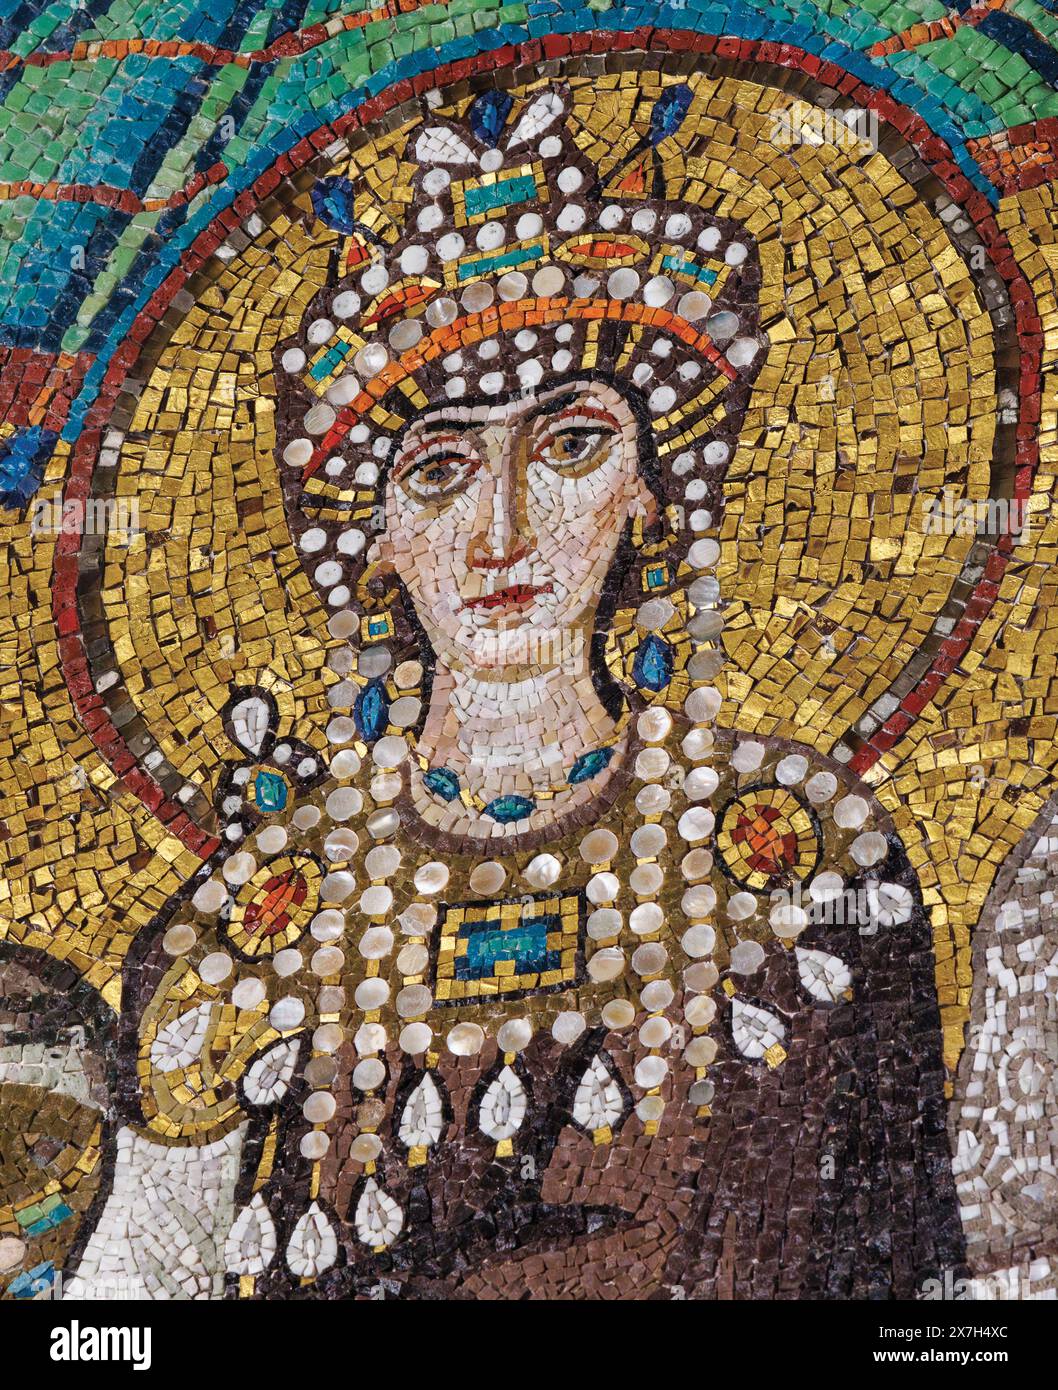 Ravenna, Provinz Ravenna, Italien. Mosaik in der Basilika San Vitale der Kaiserin Theodora. Die frühchristlichen Denkmäler von Ravenna von Whic Stockfoto